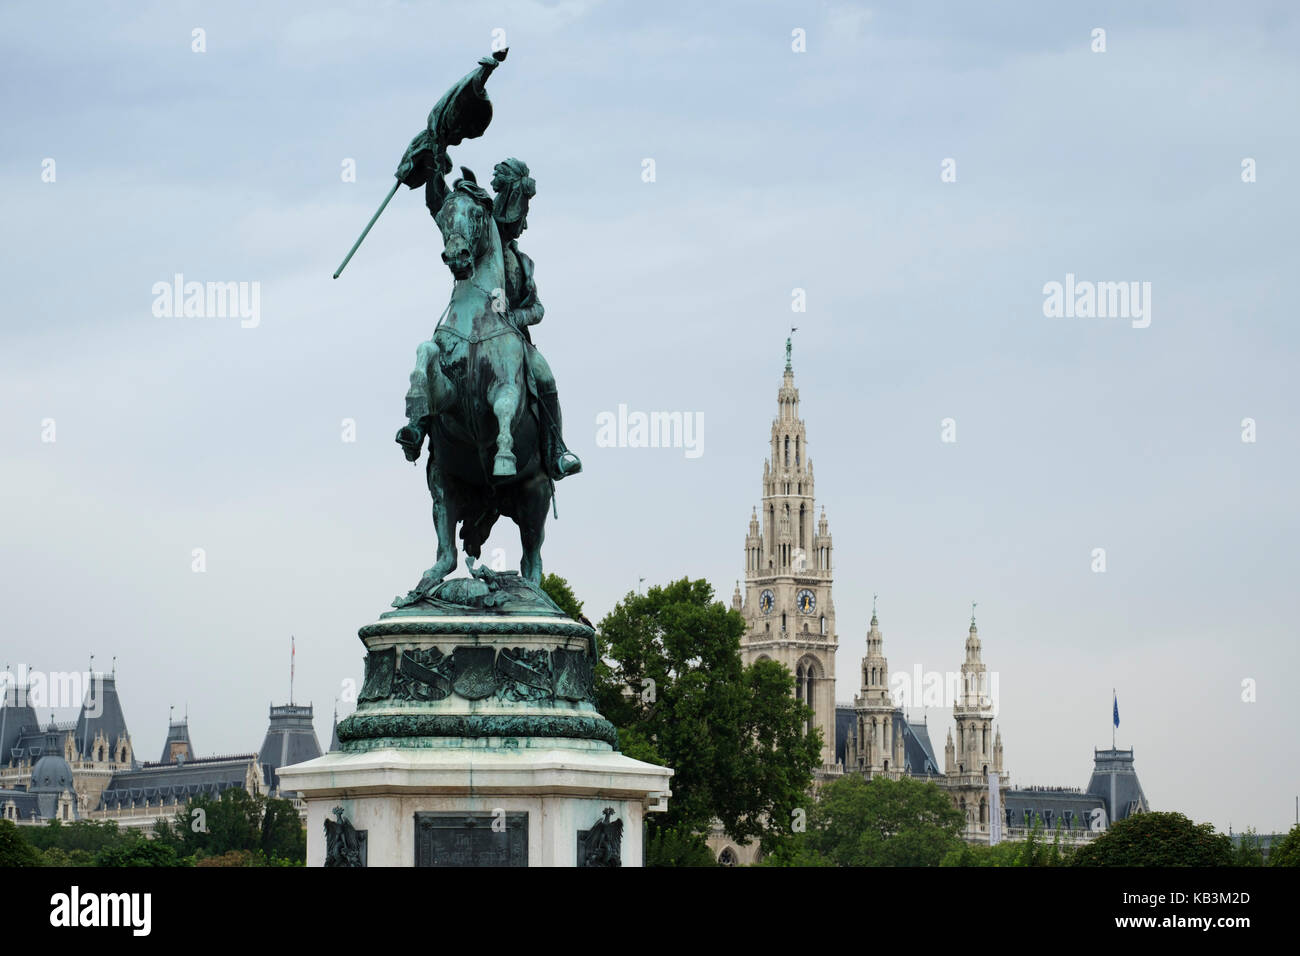 Equestrian statue of Erzherzog Karl Archduke Charles of Austria in Vienna Stock Photo